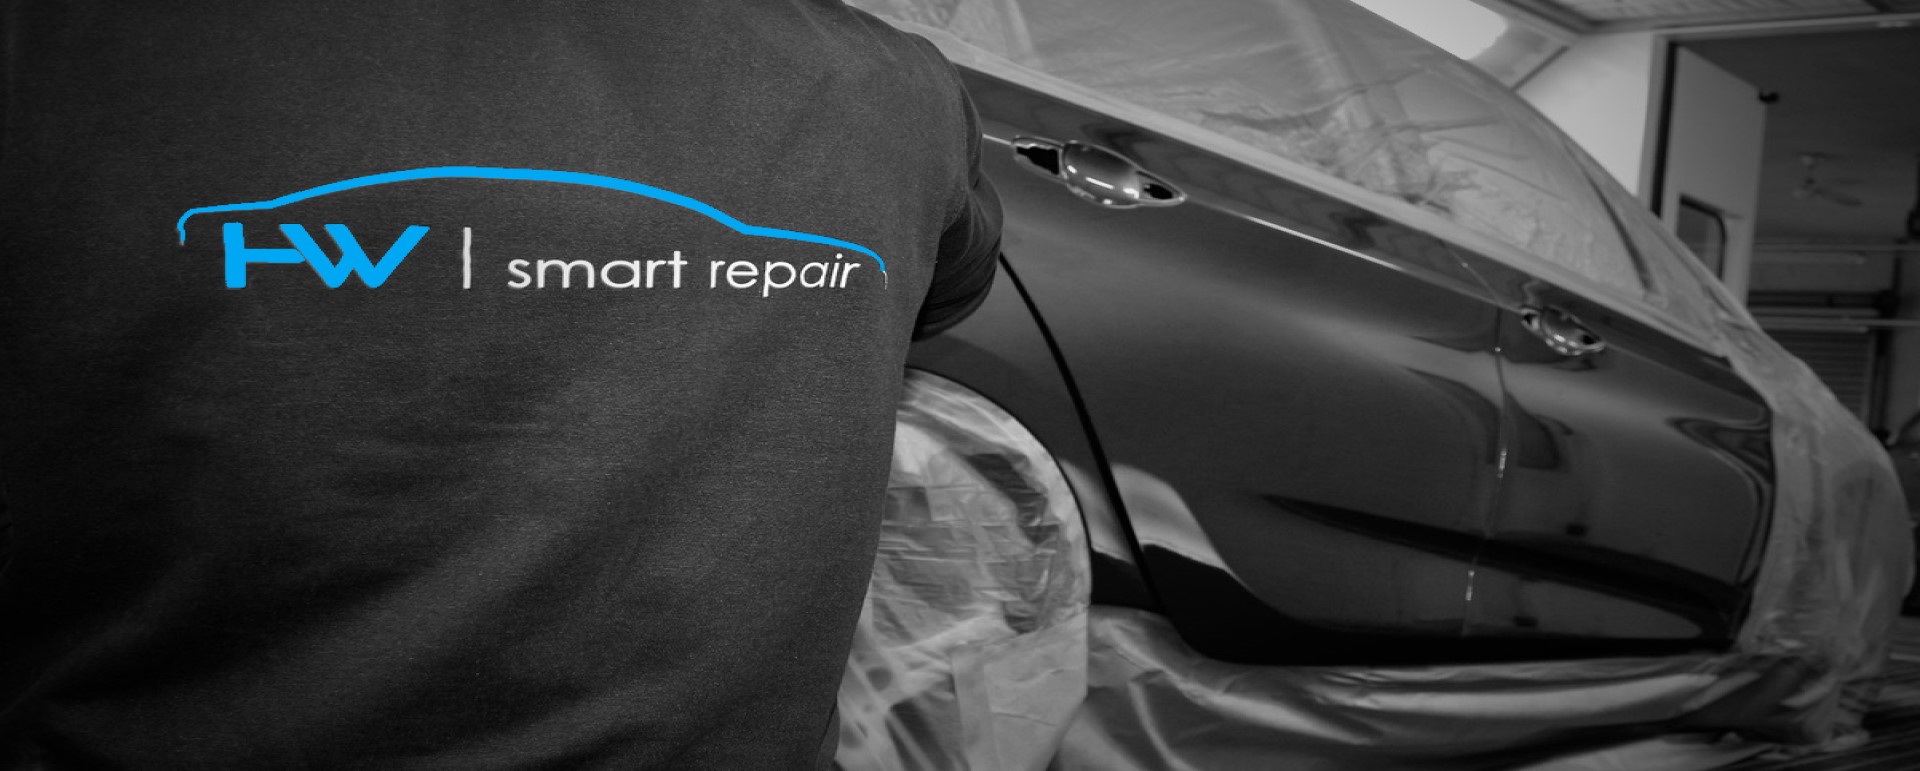 hw smart repair